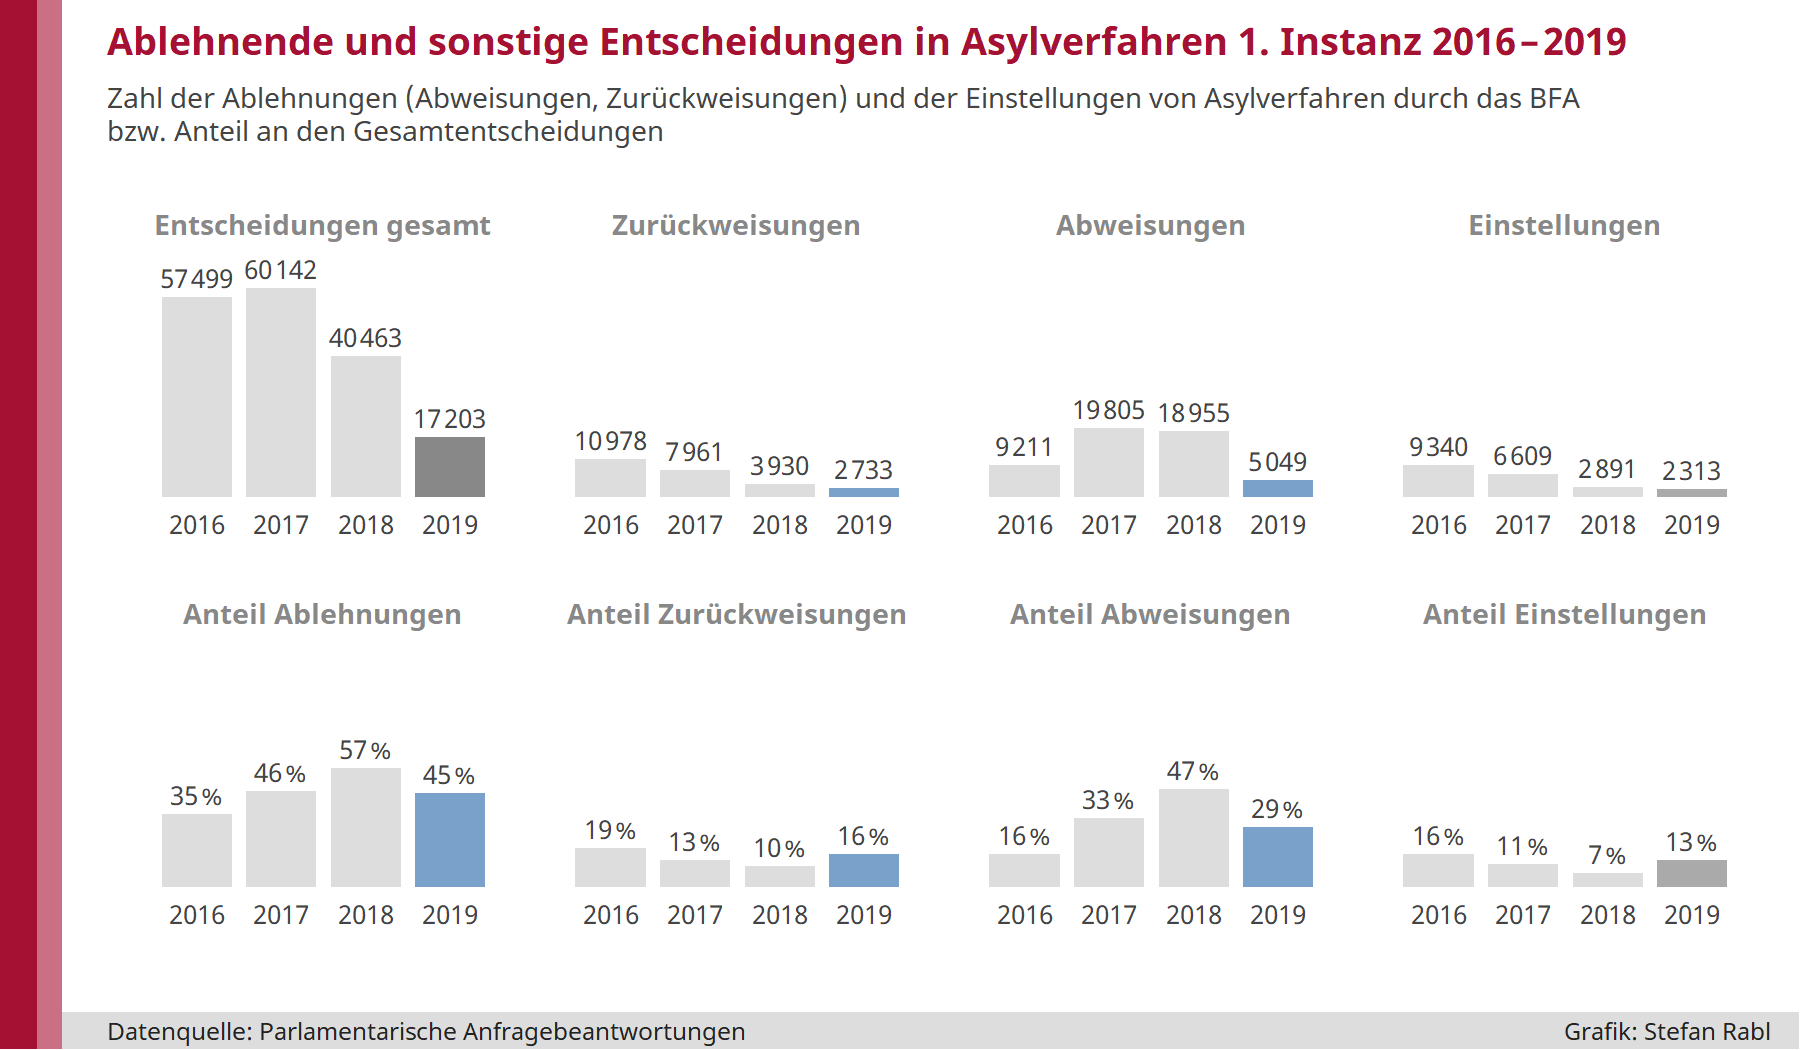 Grafik: Ablehnende und sonstige Entscheidungen in Asylverfahren erster Instanz in Österreich 2016 bis 2019